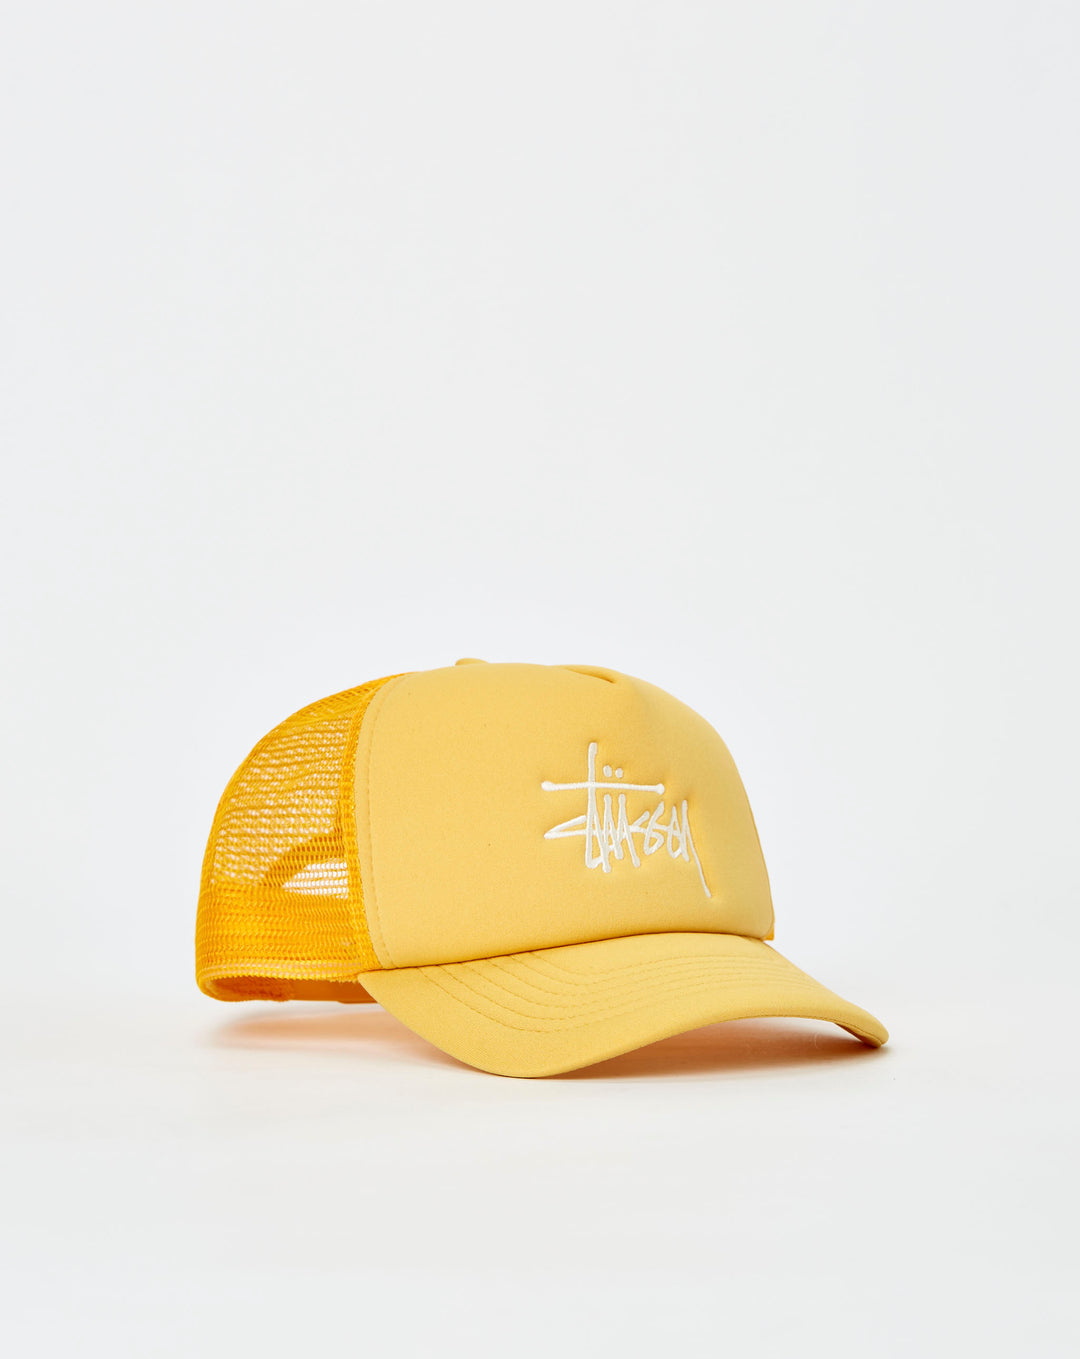 Stüssy heron preston embroidered logo baseball cap item  - Cheap Urlfreeze Jordan outlet